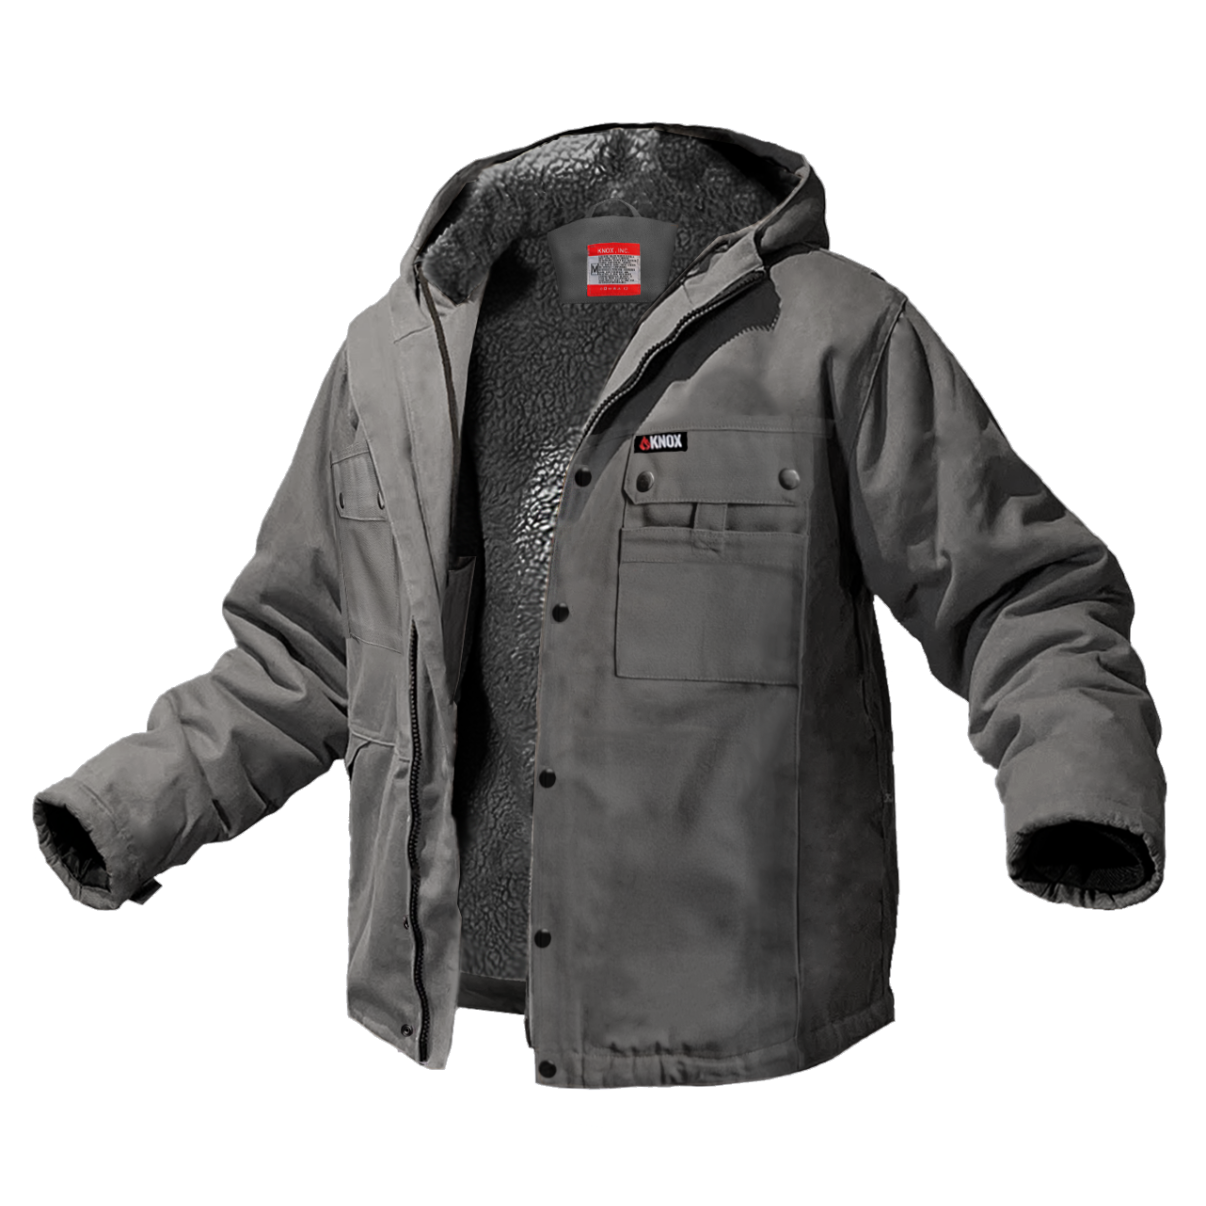 Knox Heavy-Duty FR Sherpa Lined Jacket (Gray)